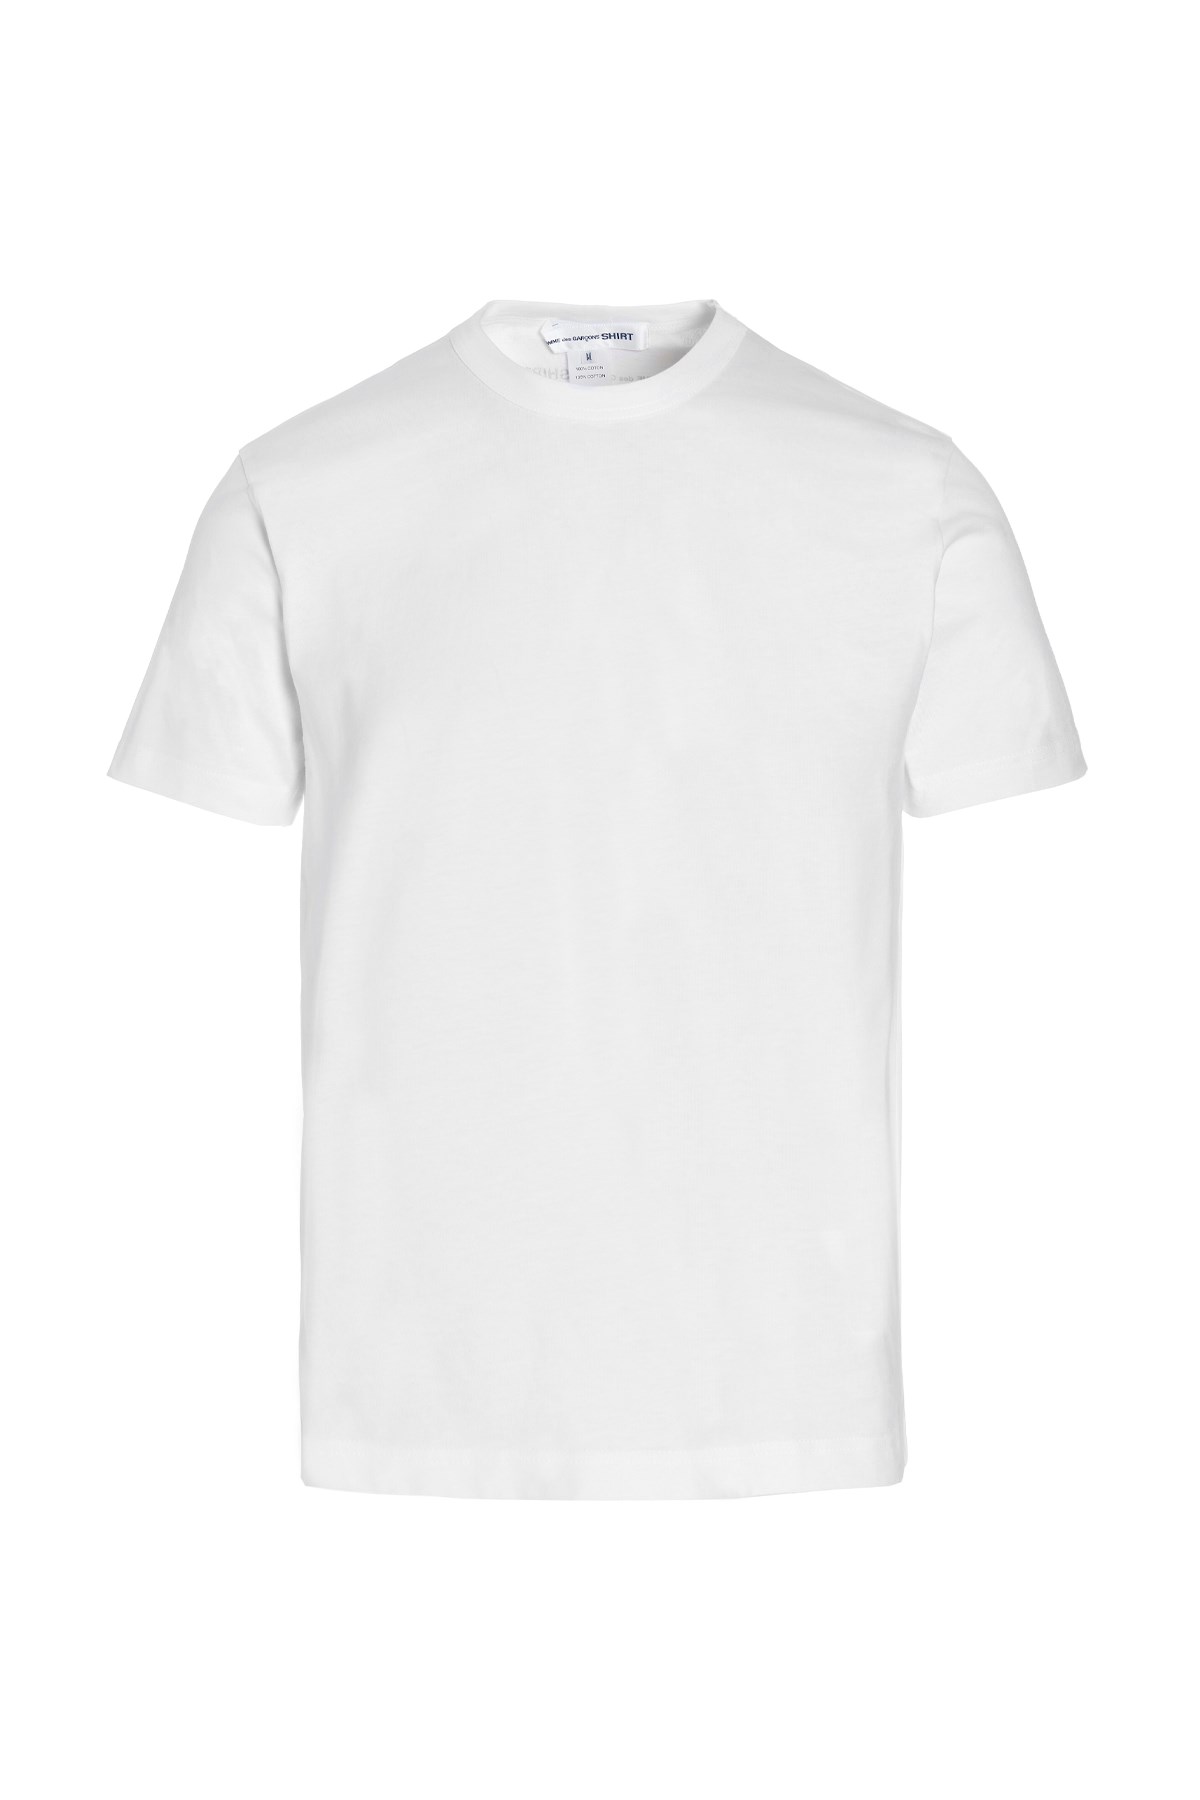 COMME DES GARCONS SHIRT Logo T-Shirt